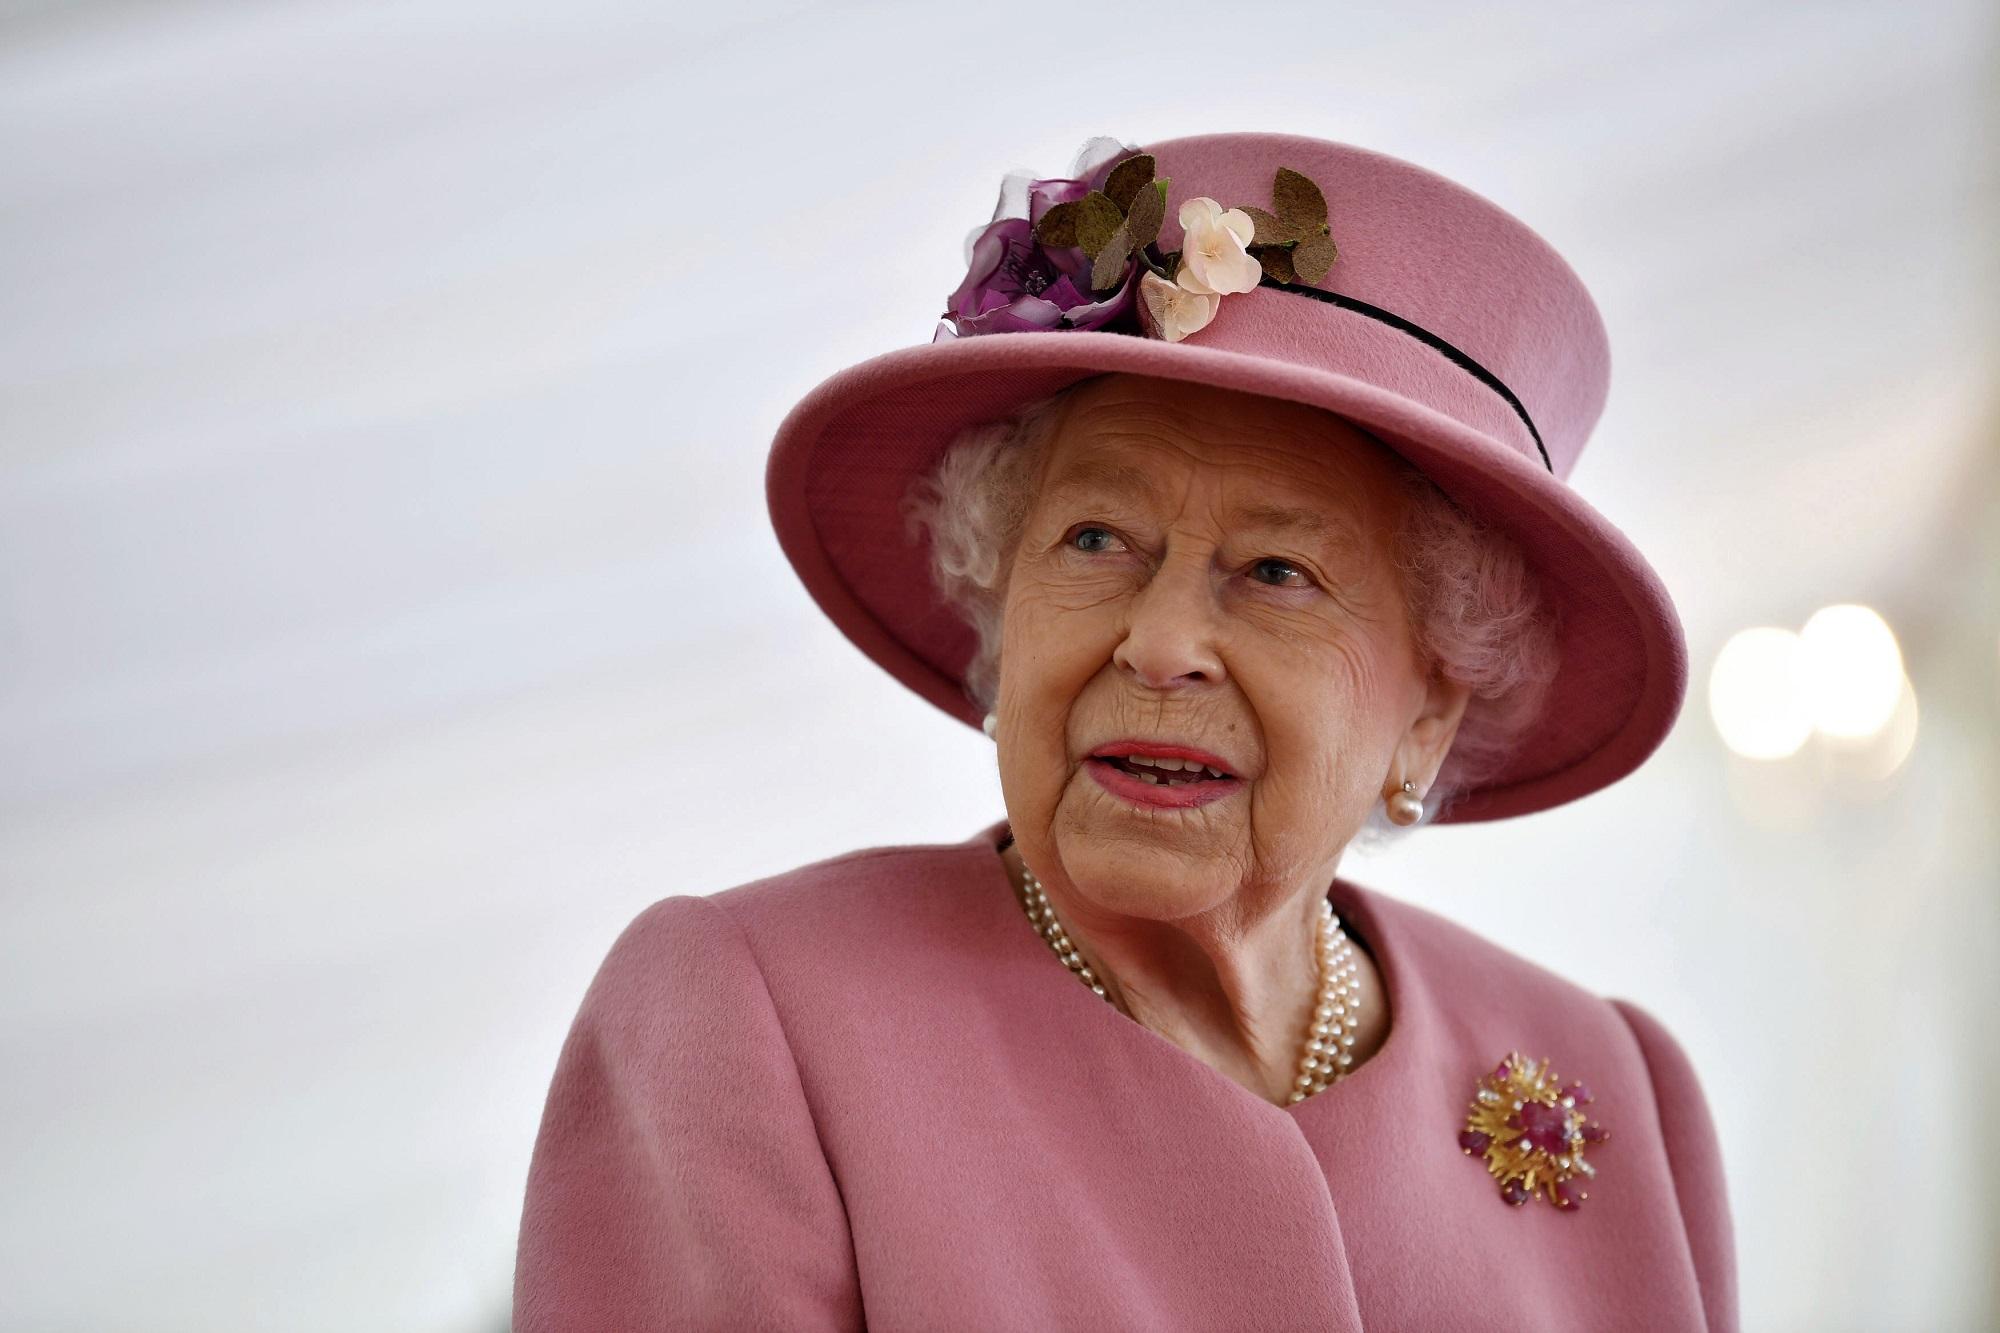 Bασίλισσα Ελισάβετ:  Υπό ιατρική παρακολούθηση για την υγεία της  – Ανησυχία στο παλάτι